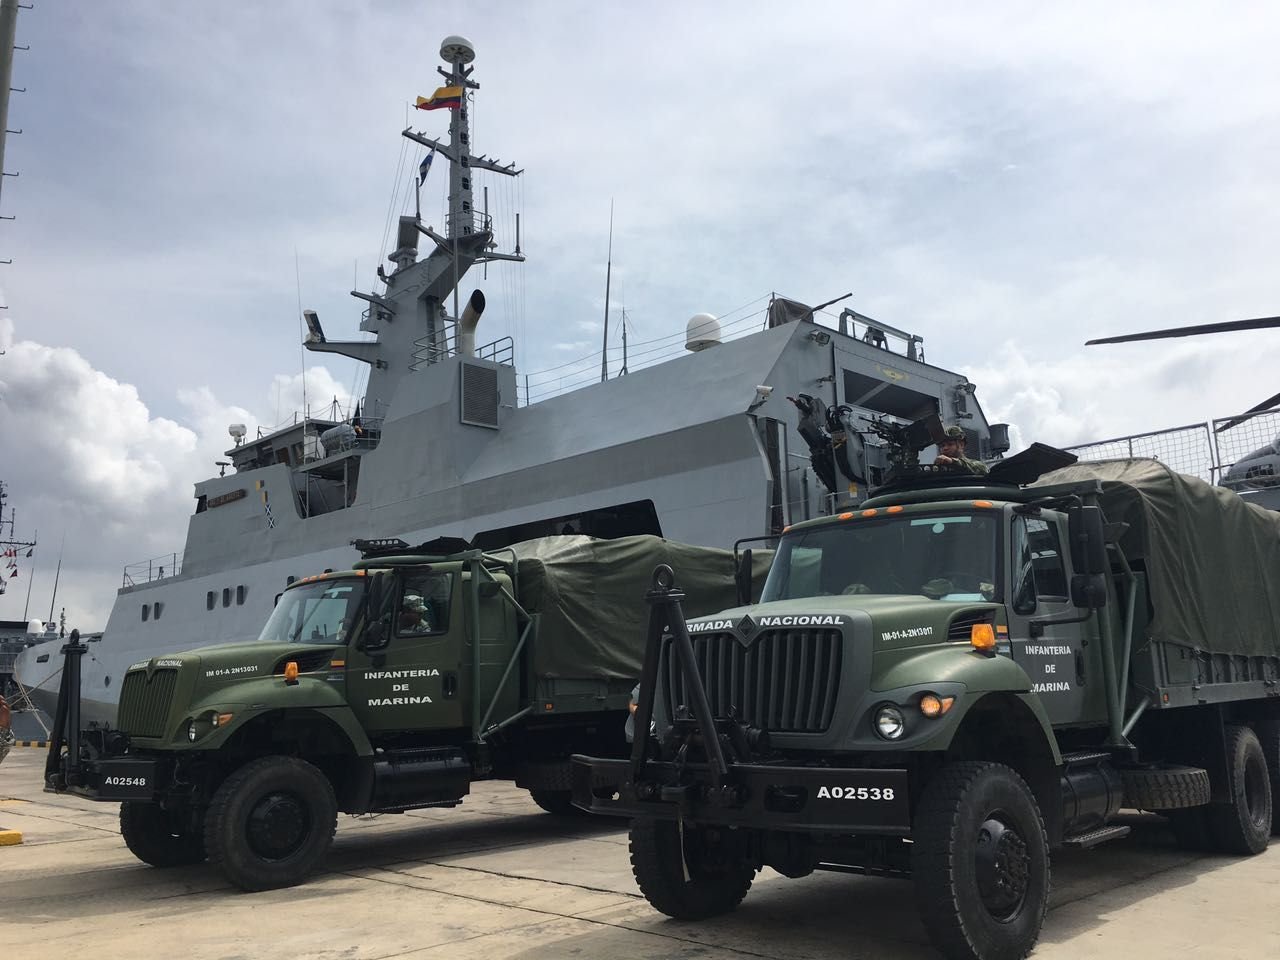 O navio que está sendo enviado ao Haiti pela Colômbia foi inaugurado em 2013 e desenhado para realizar operações de patrulha, controle de tráfego marítimo, busca e resgate, operações de paz, ajuda humanitária e controle do meio-ambiente. (Foto: Ministério da Defesa da Colômbia)